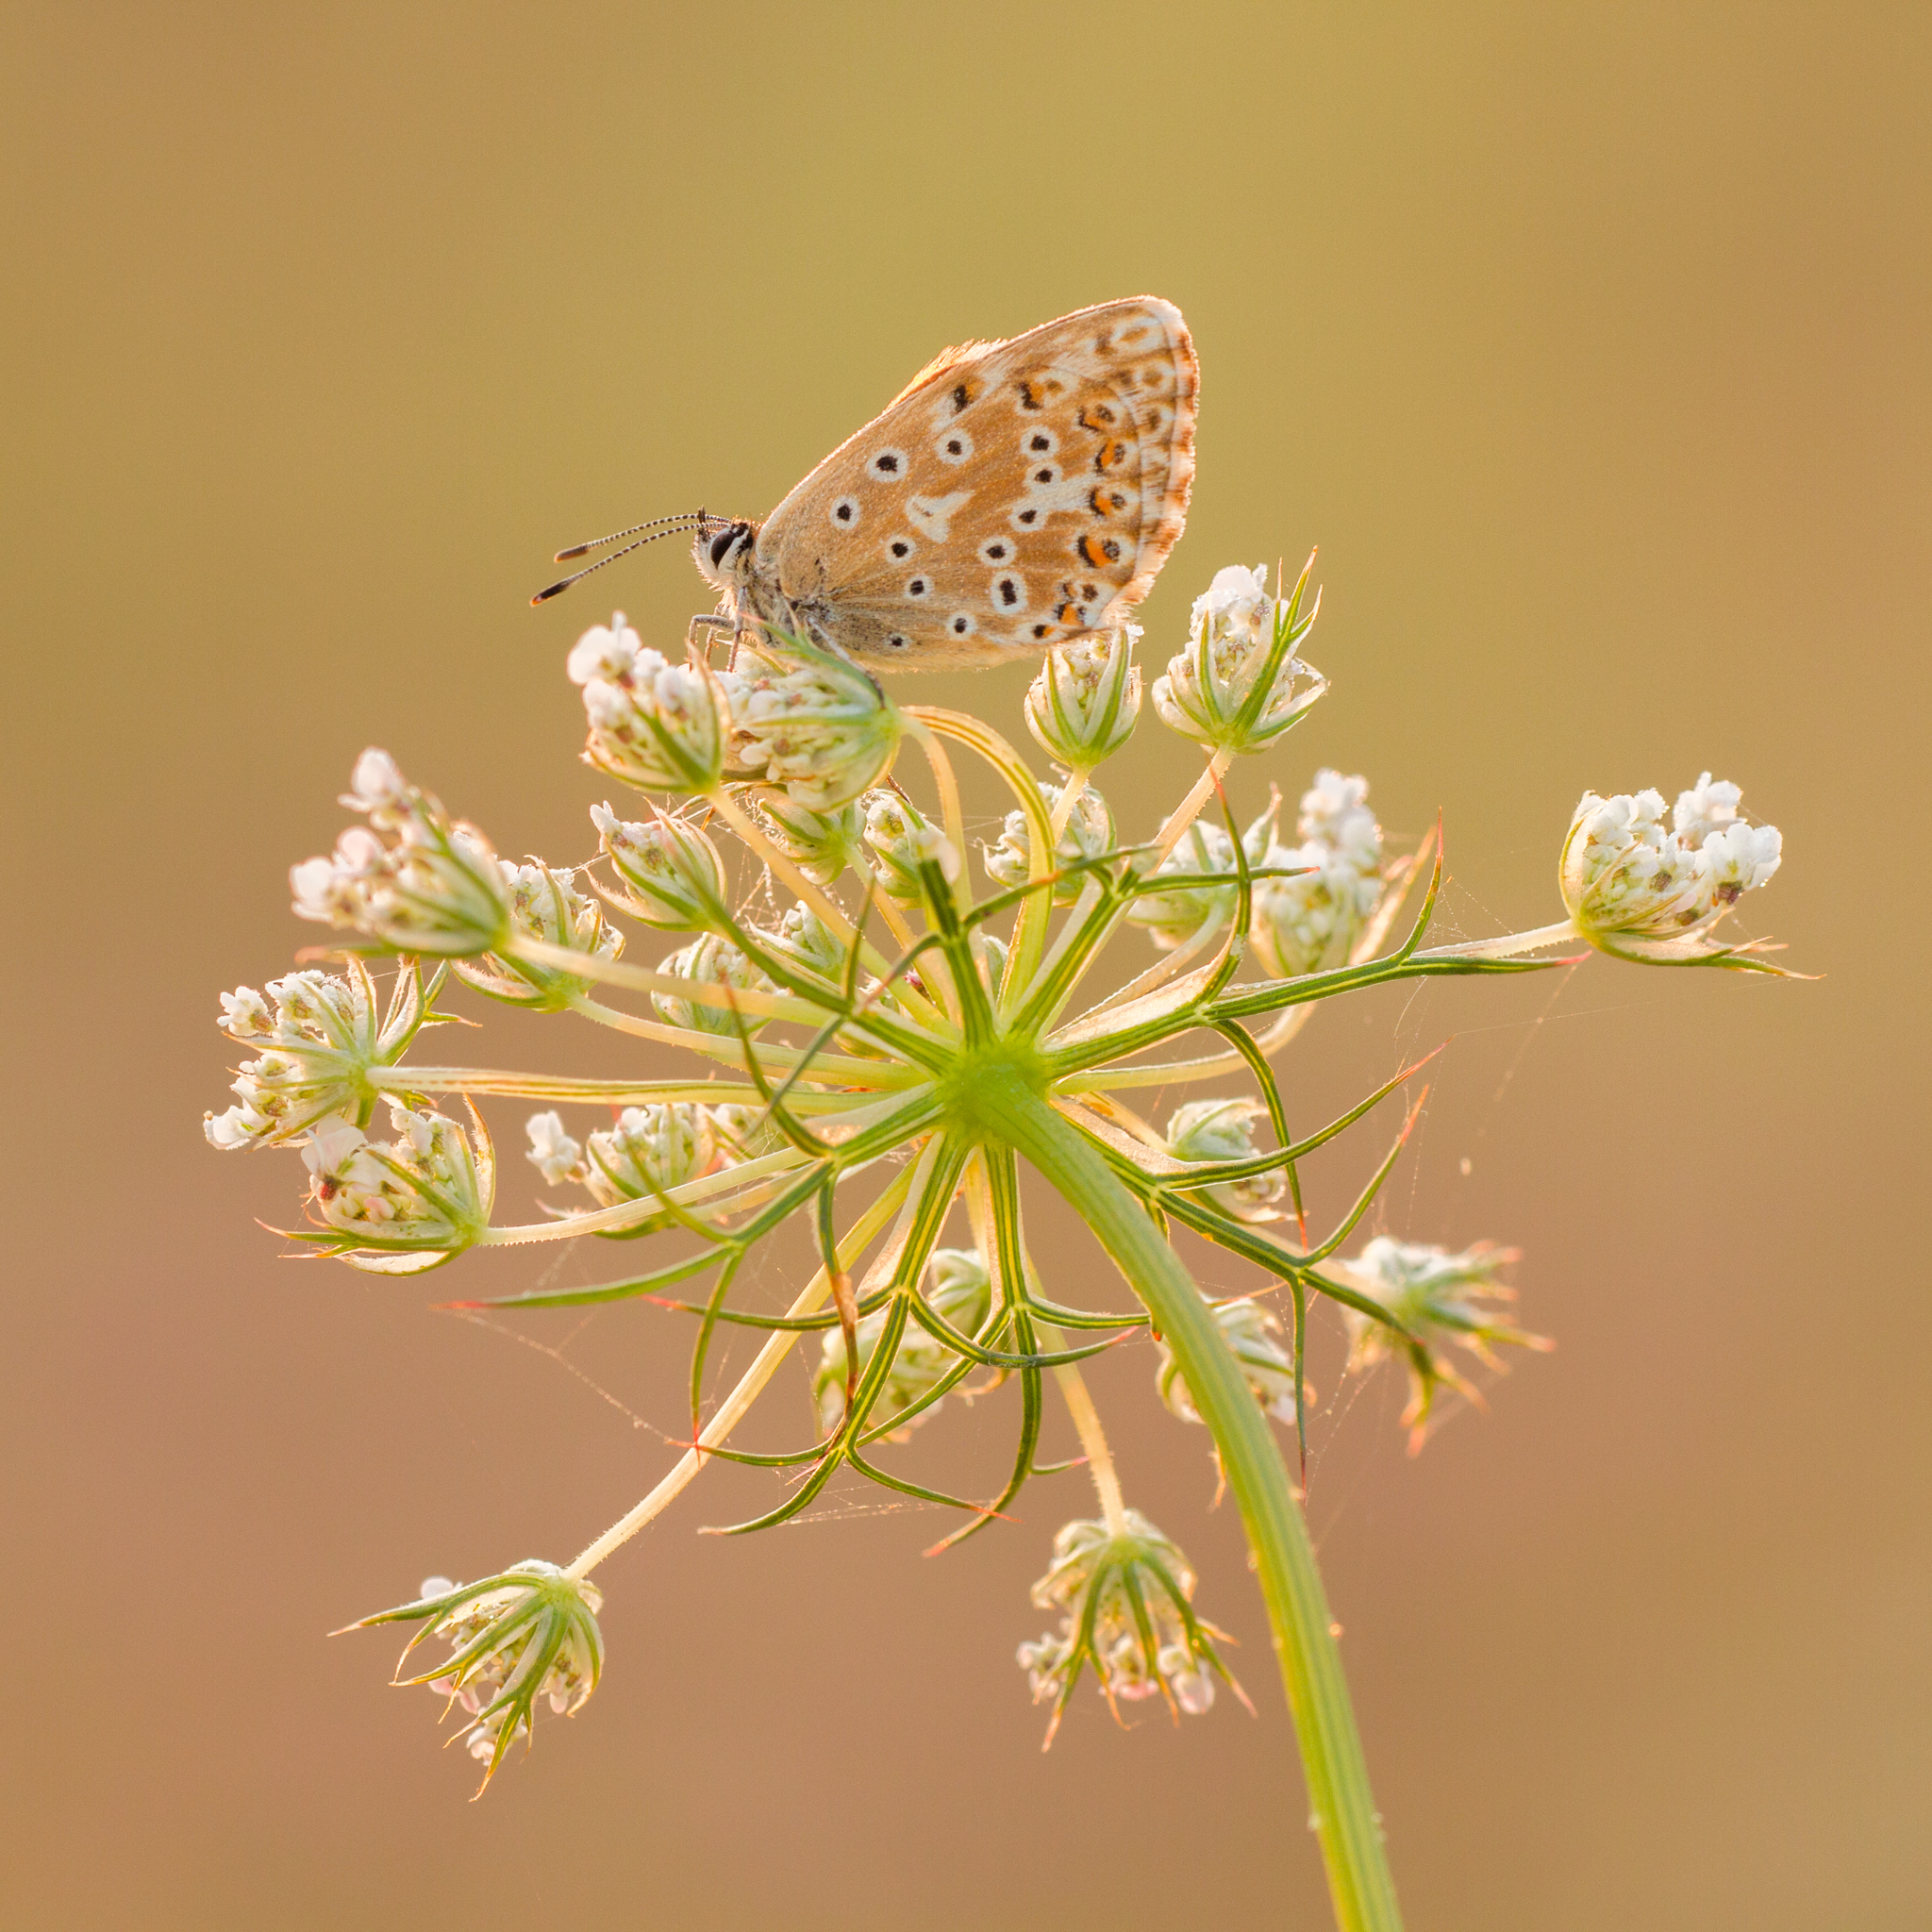 Bleek Blauwtje, Vlinders, Vlinder, Workshop, Workshop vlinders fotograferen 